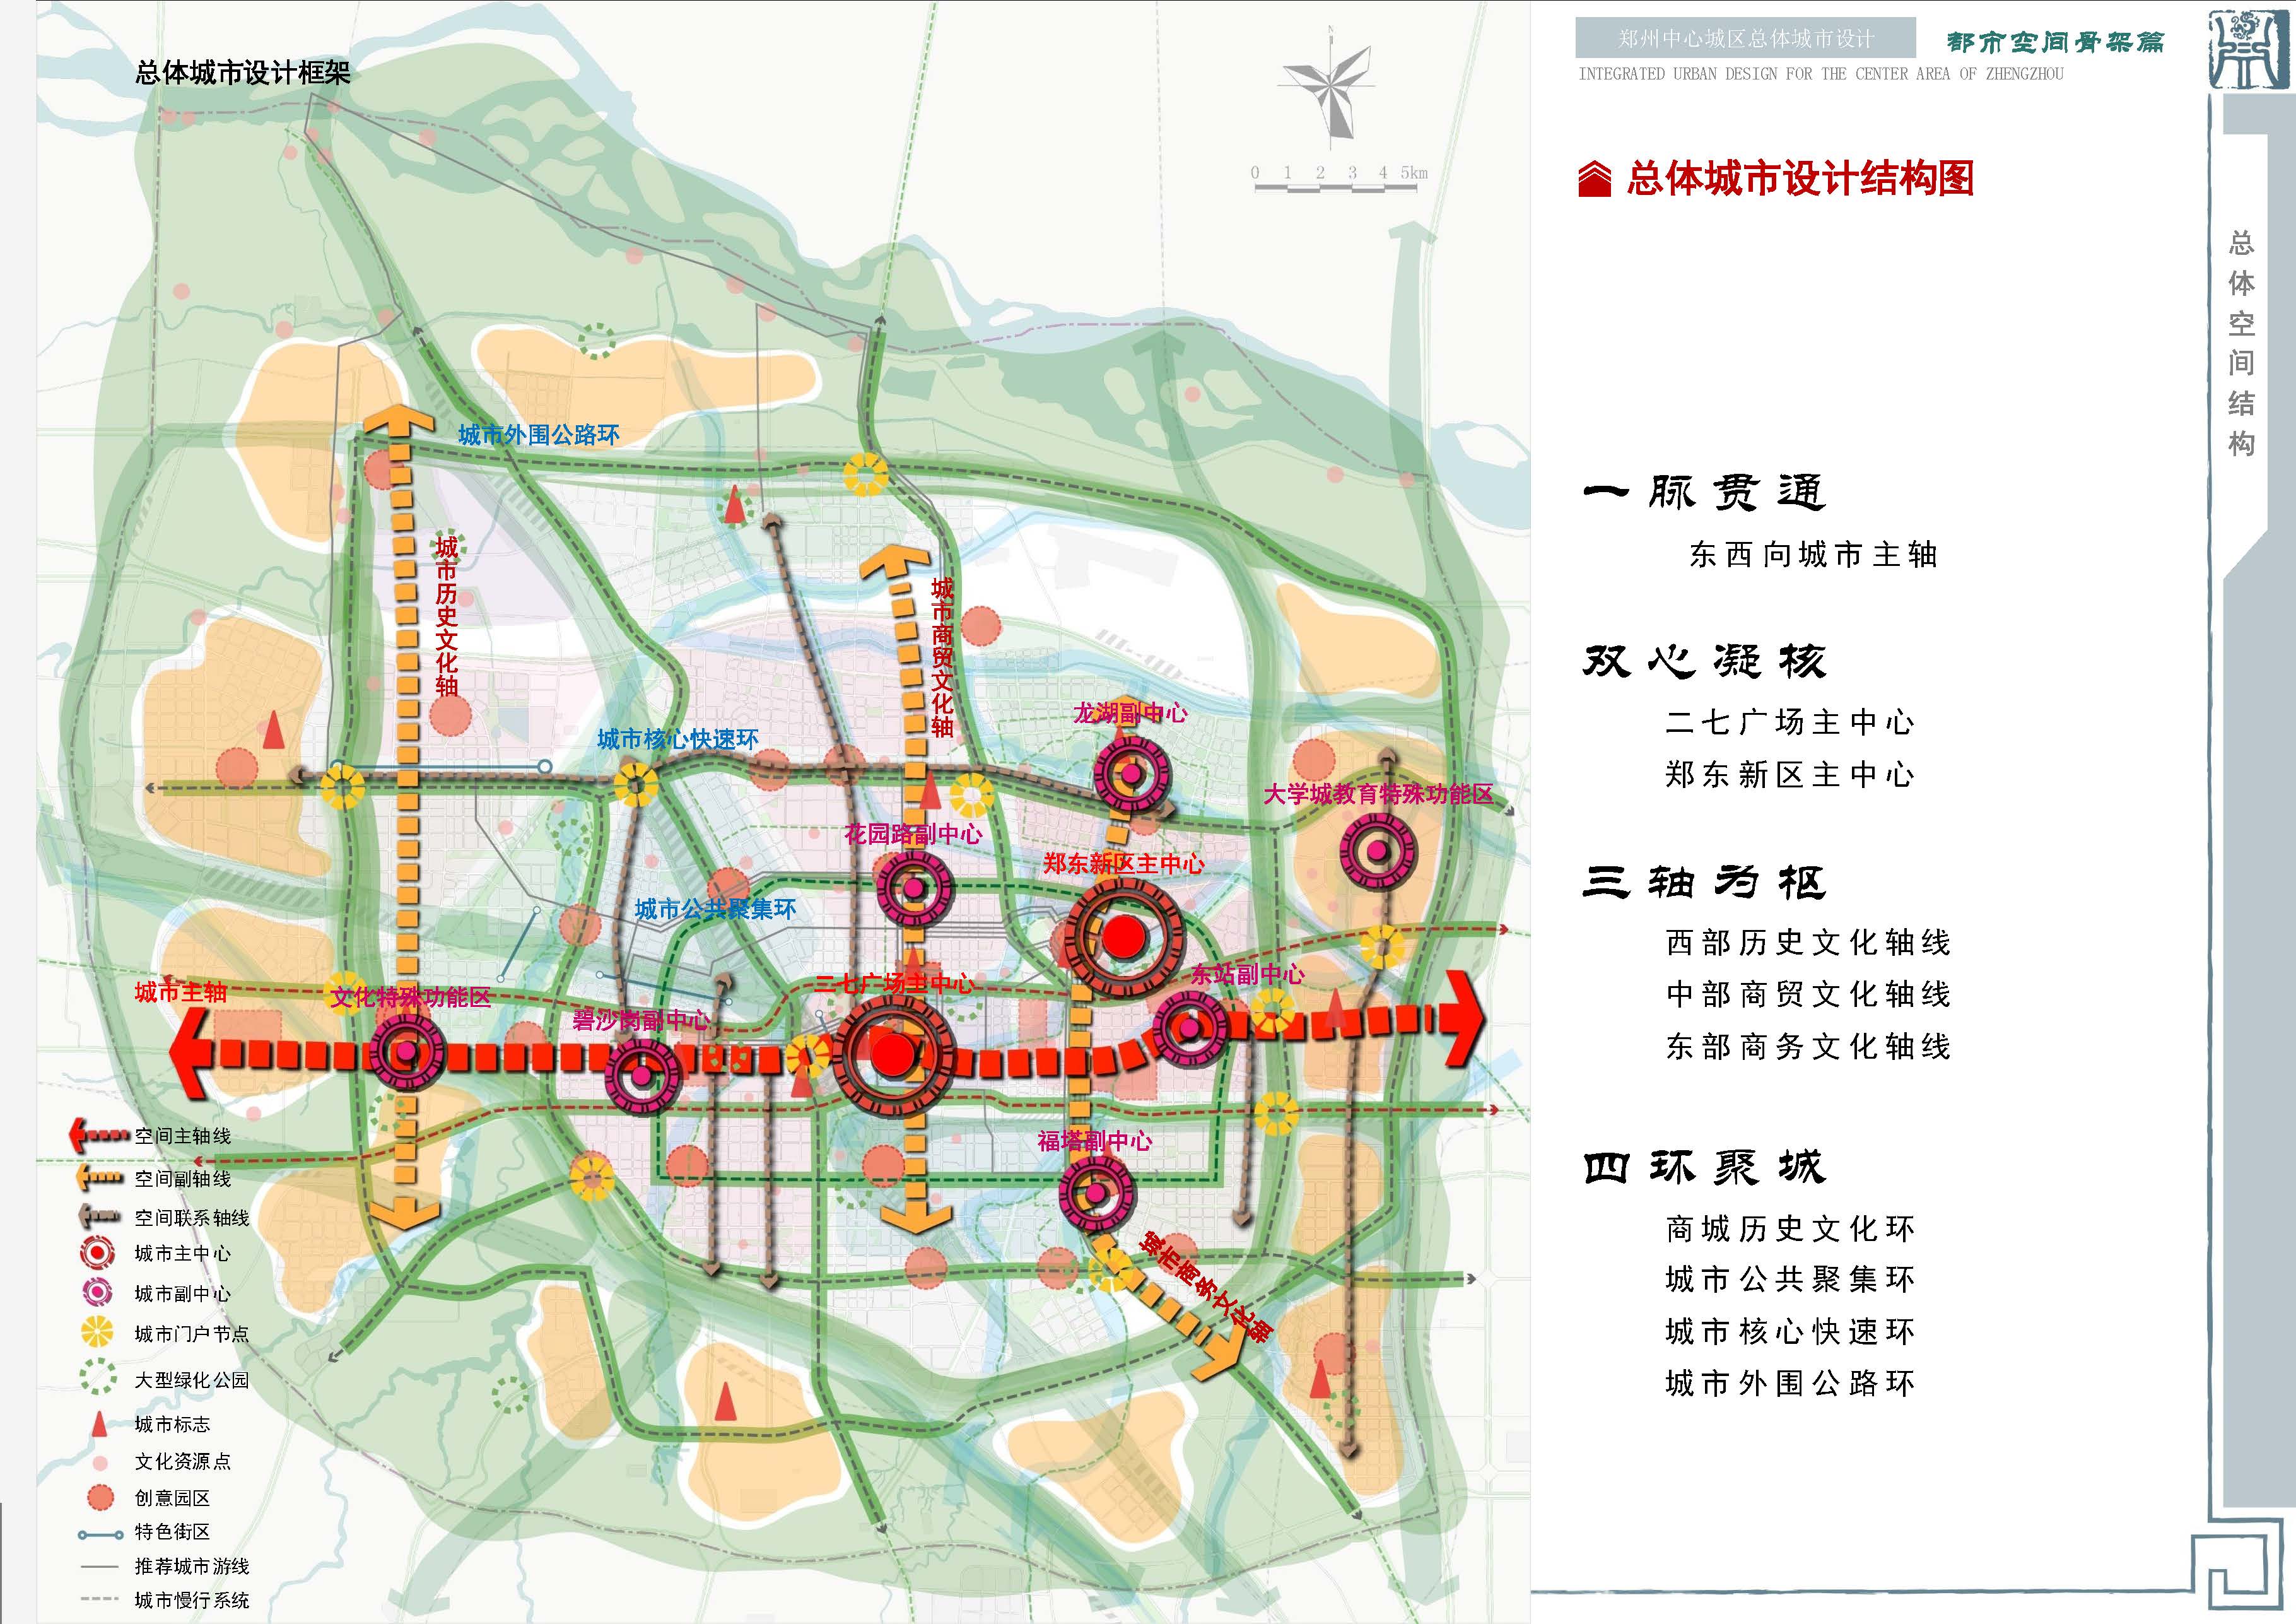 在郑州市城乡规划局发布的《郑州市中心城区总体城市设计》中,明确